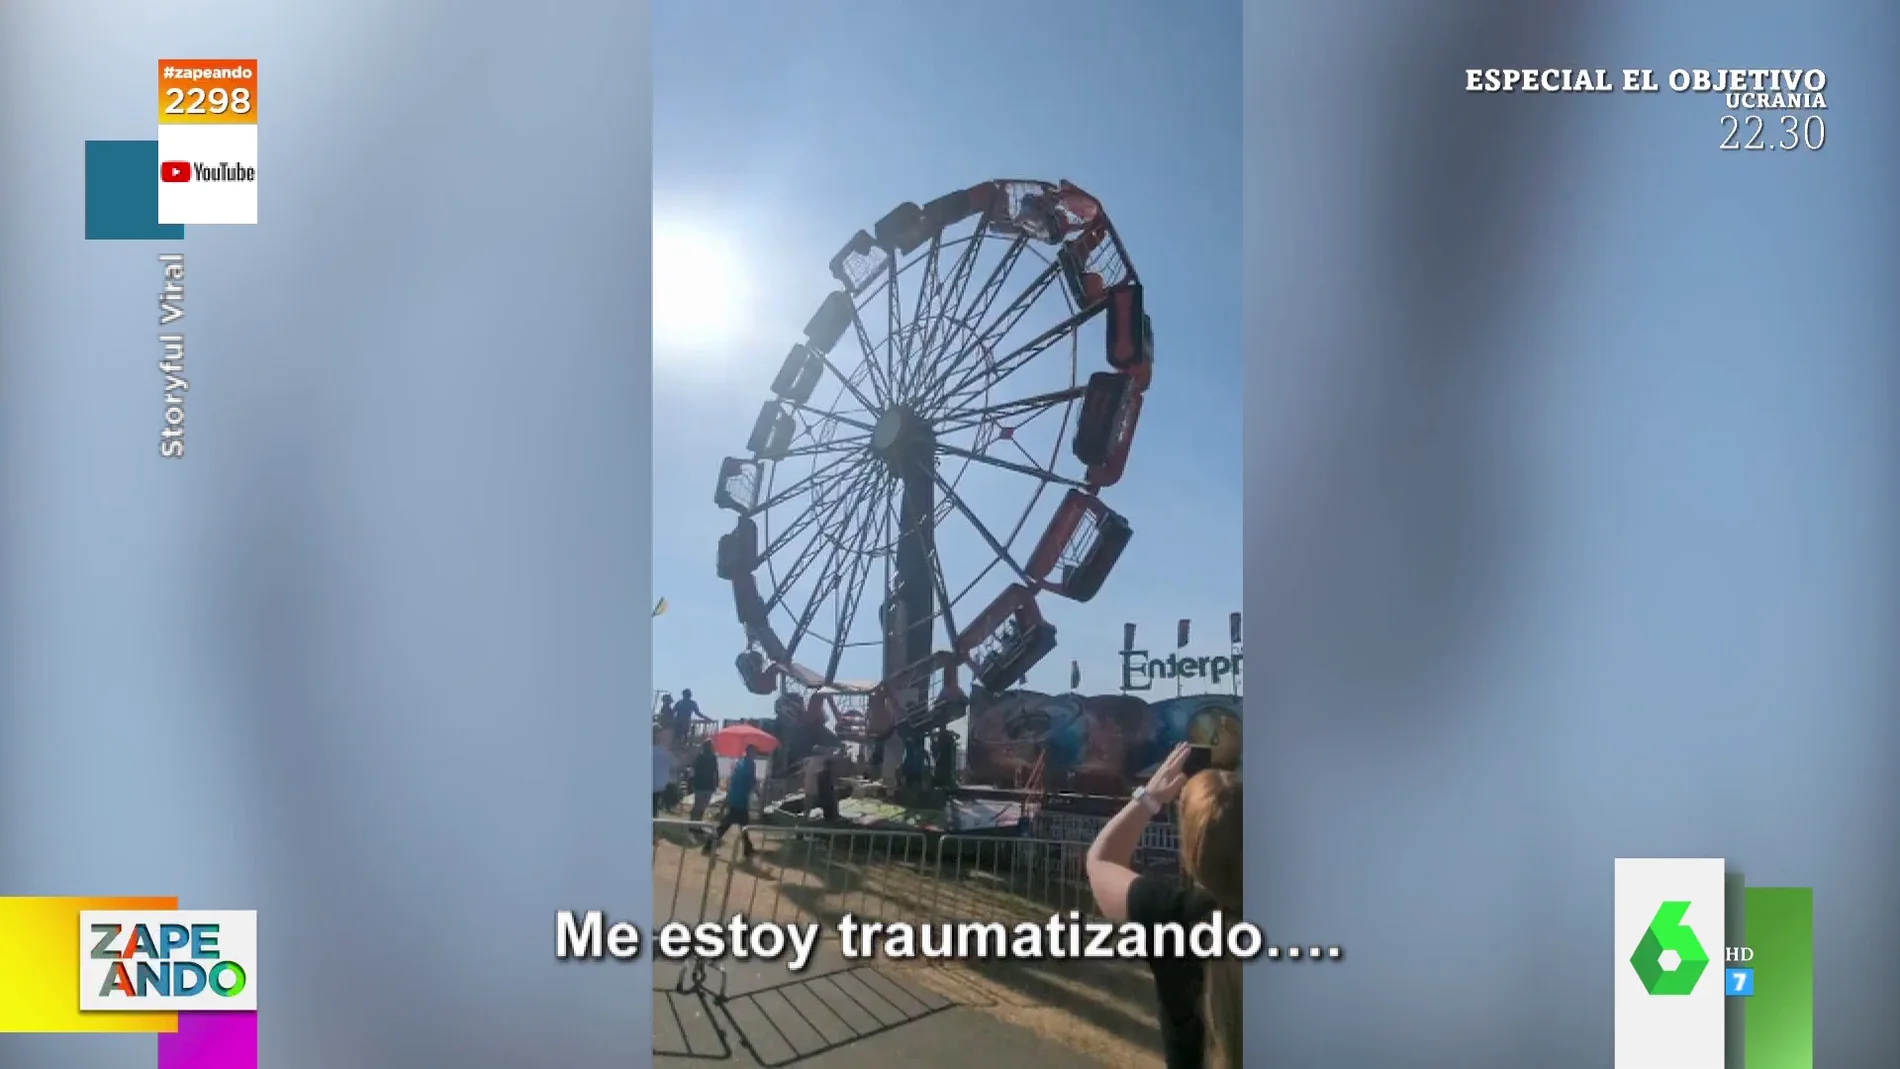 El impactante vídeo en el que las cabinas de una noria no paran de dar vueltas y golpear a sus visitantes por el viento